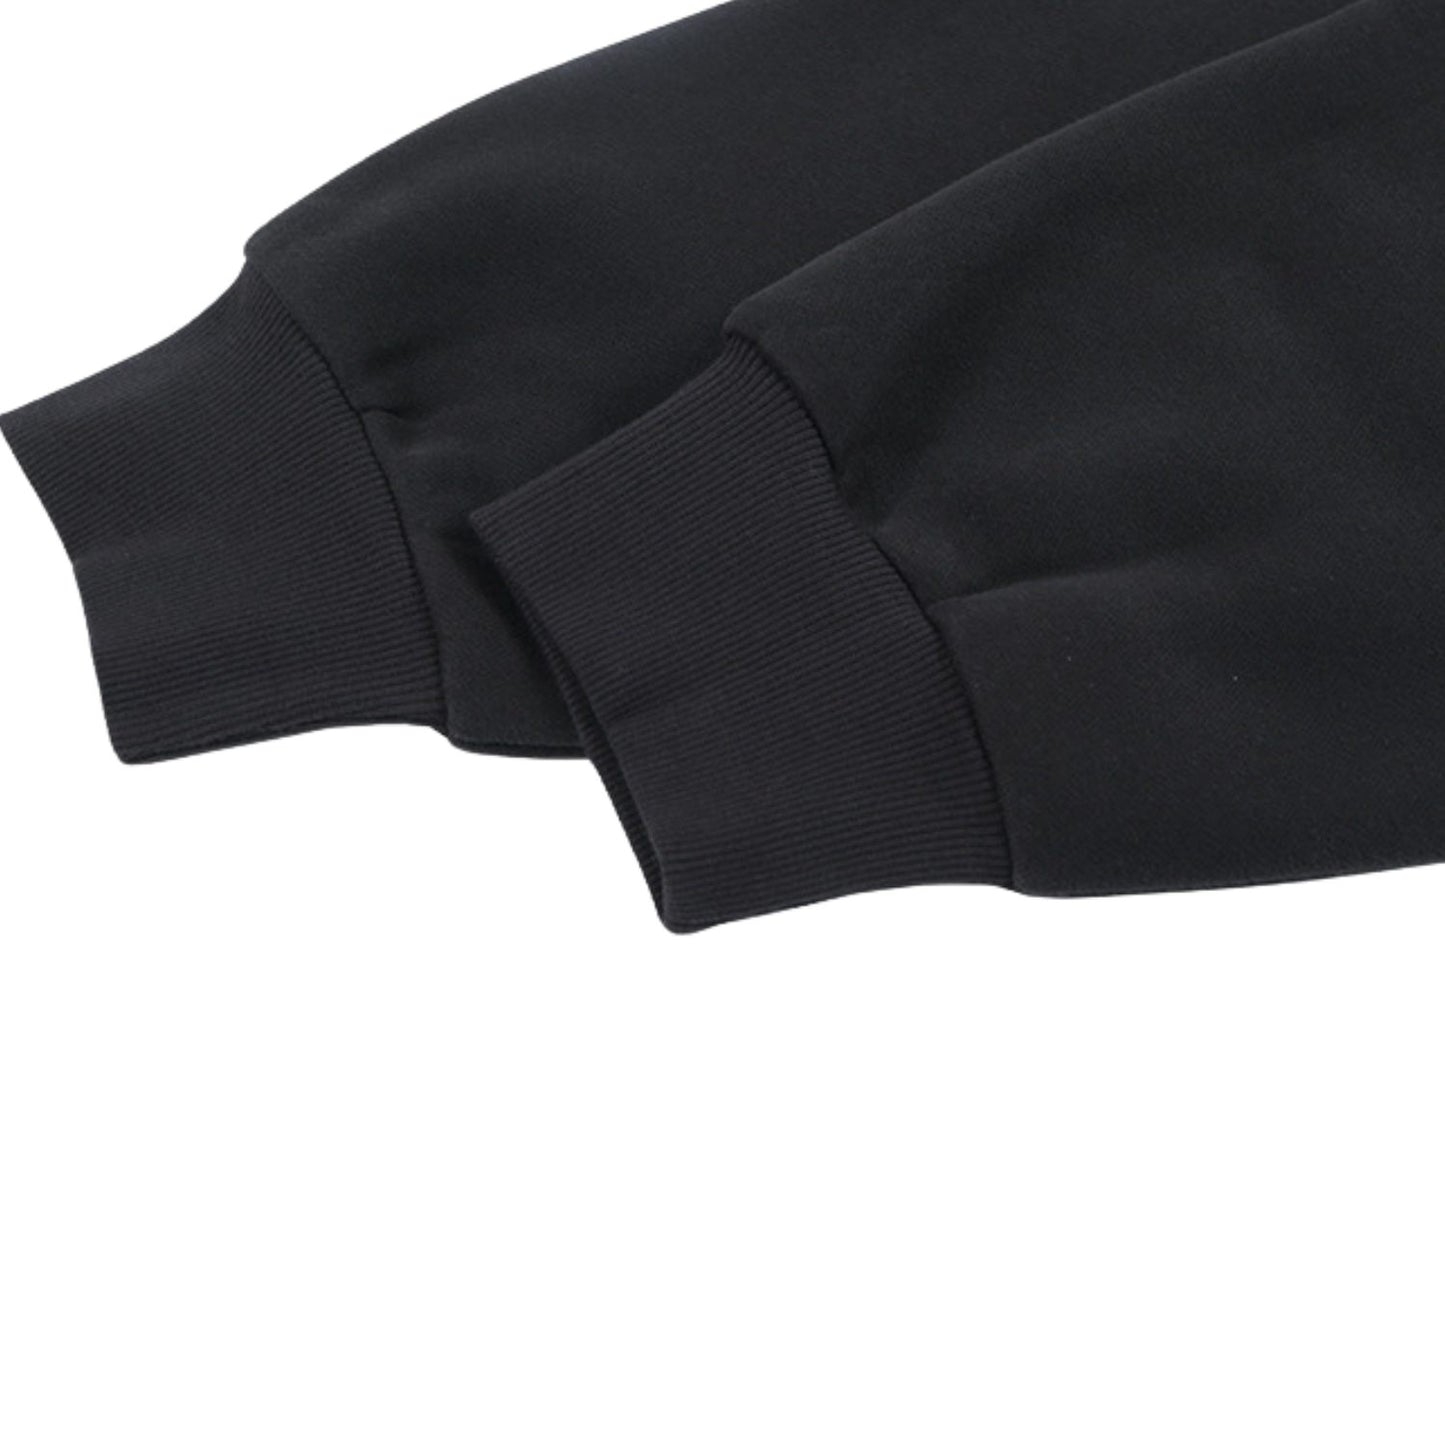 Forgiveness Winter Streetwear Black Hoodie Sleeves